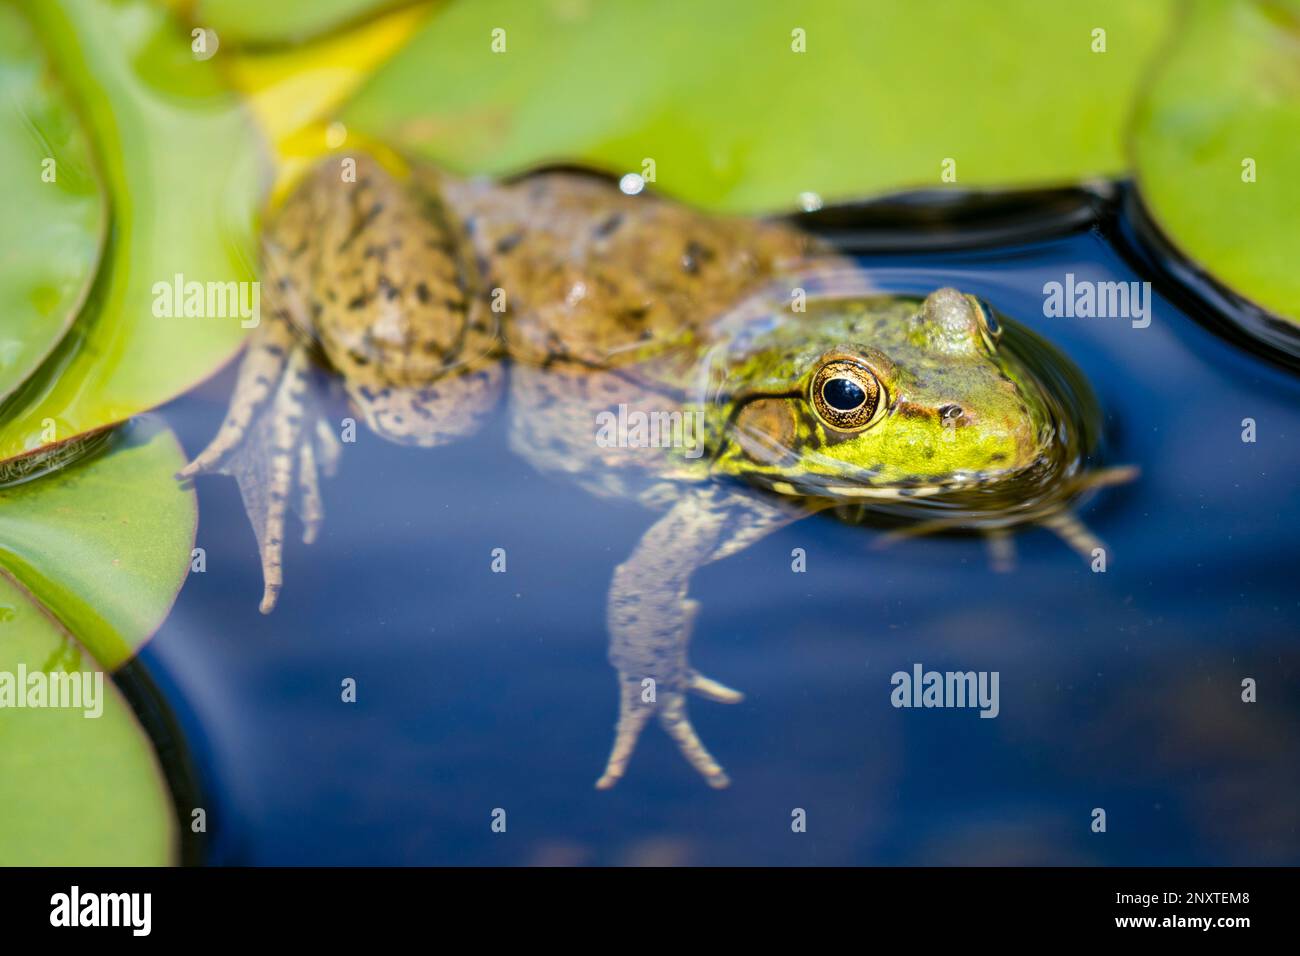 Ein grüner Frosch schwimmt im Wasser neben ein paar Lilienfüttern. Stockfoto